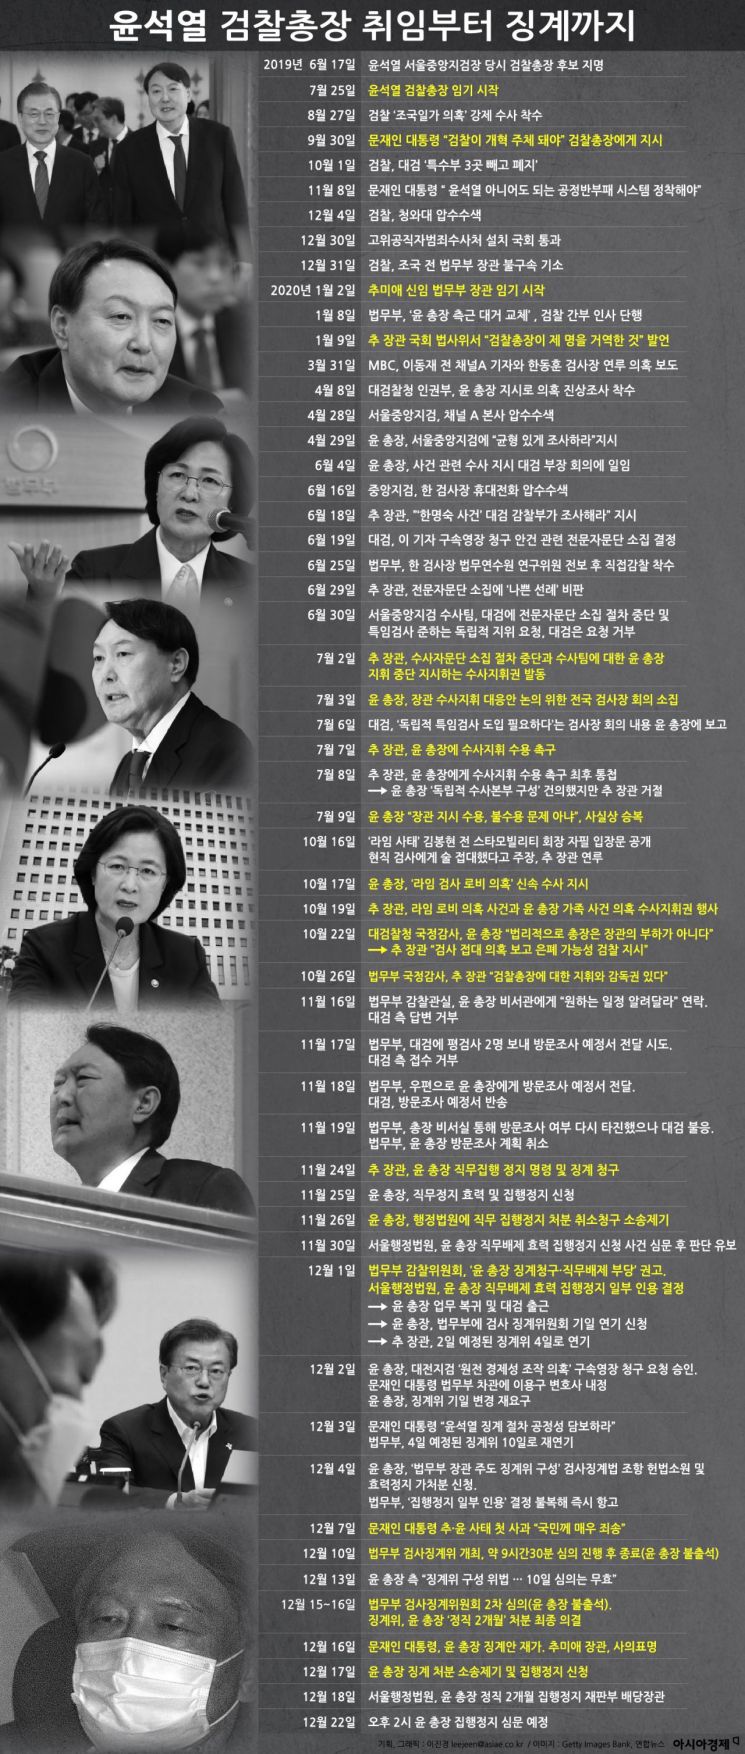 [인포그래픽]윤석열 검찰총장 취임부터 징계까지